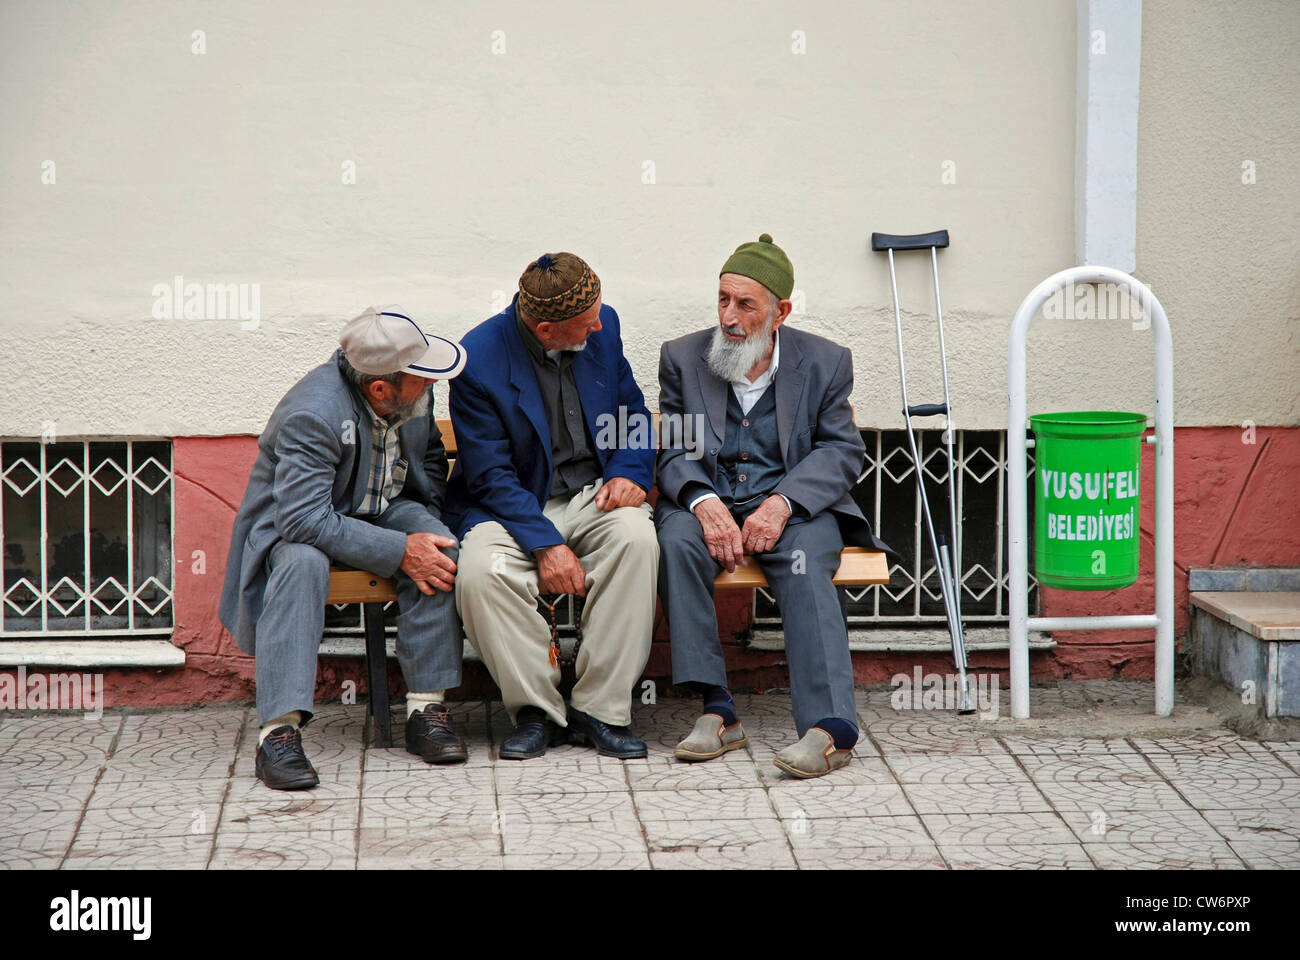 Tre vecchio seduto su una panchina e chat, Turchia, Anatolia Orientale, Yusufeli Foto Stock